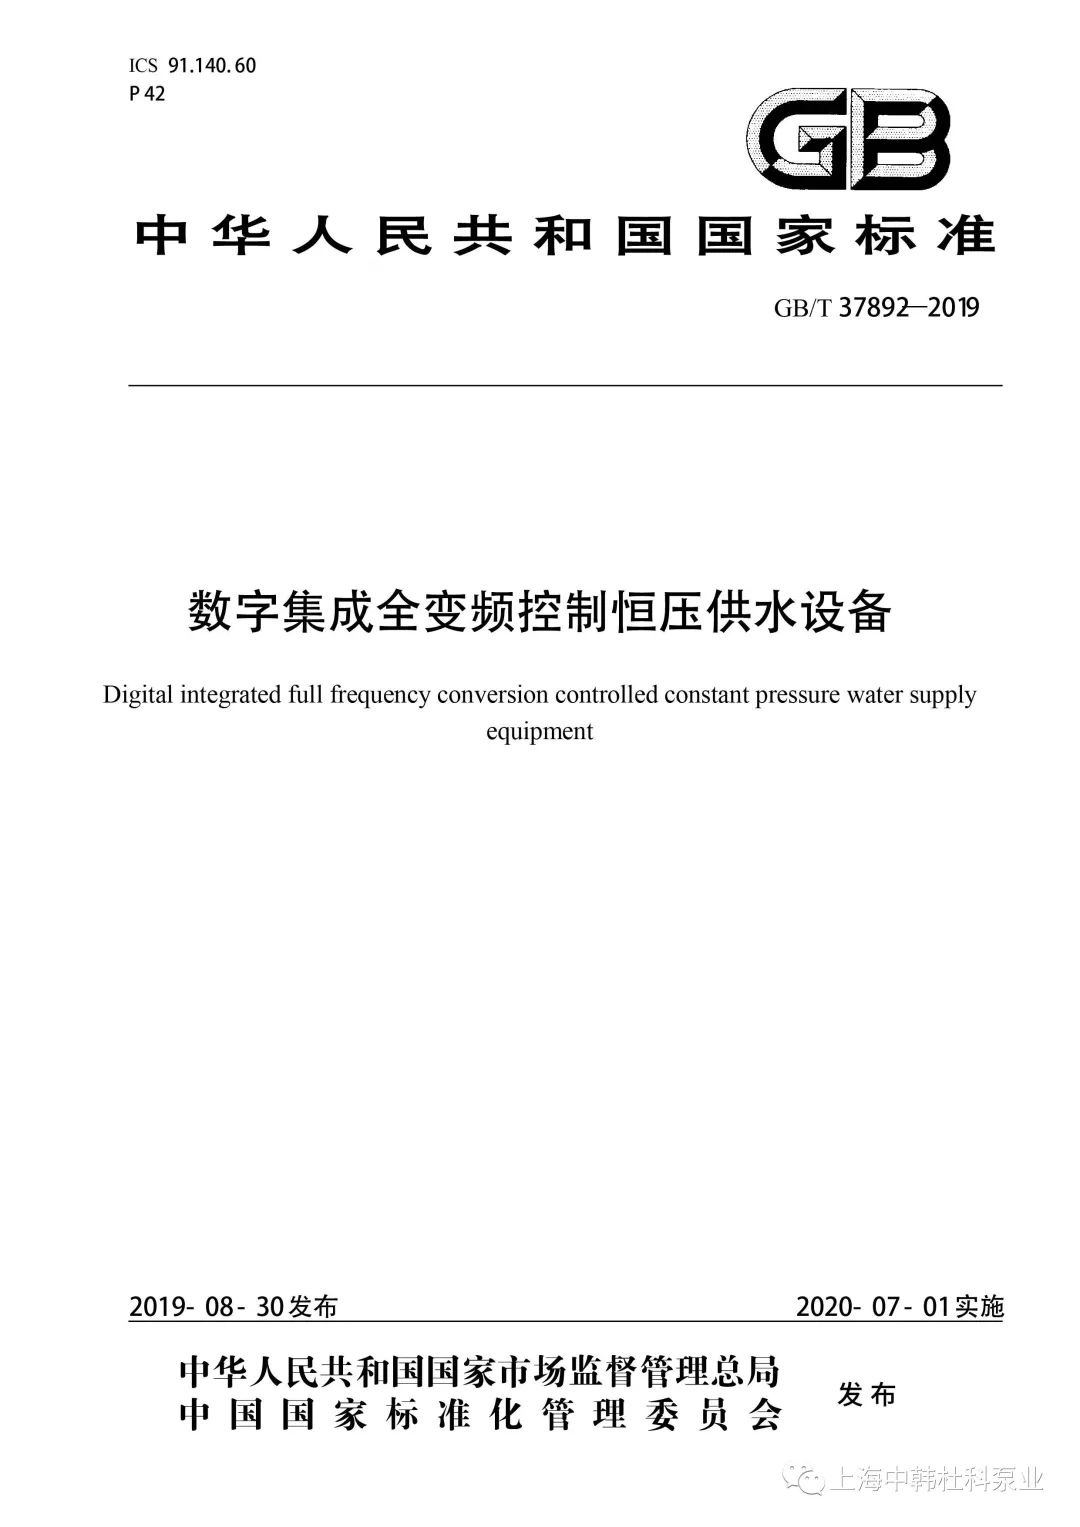 上海中韩杜科泵业主编的国家标准《数字集成全变频控制恒压供水设备》批准发布！